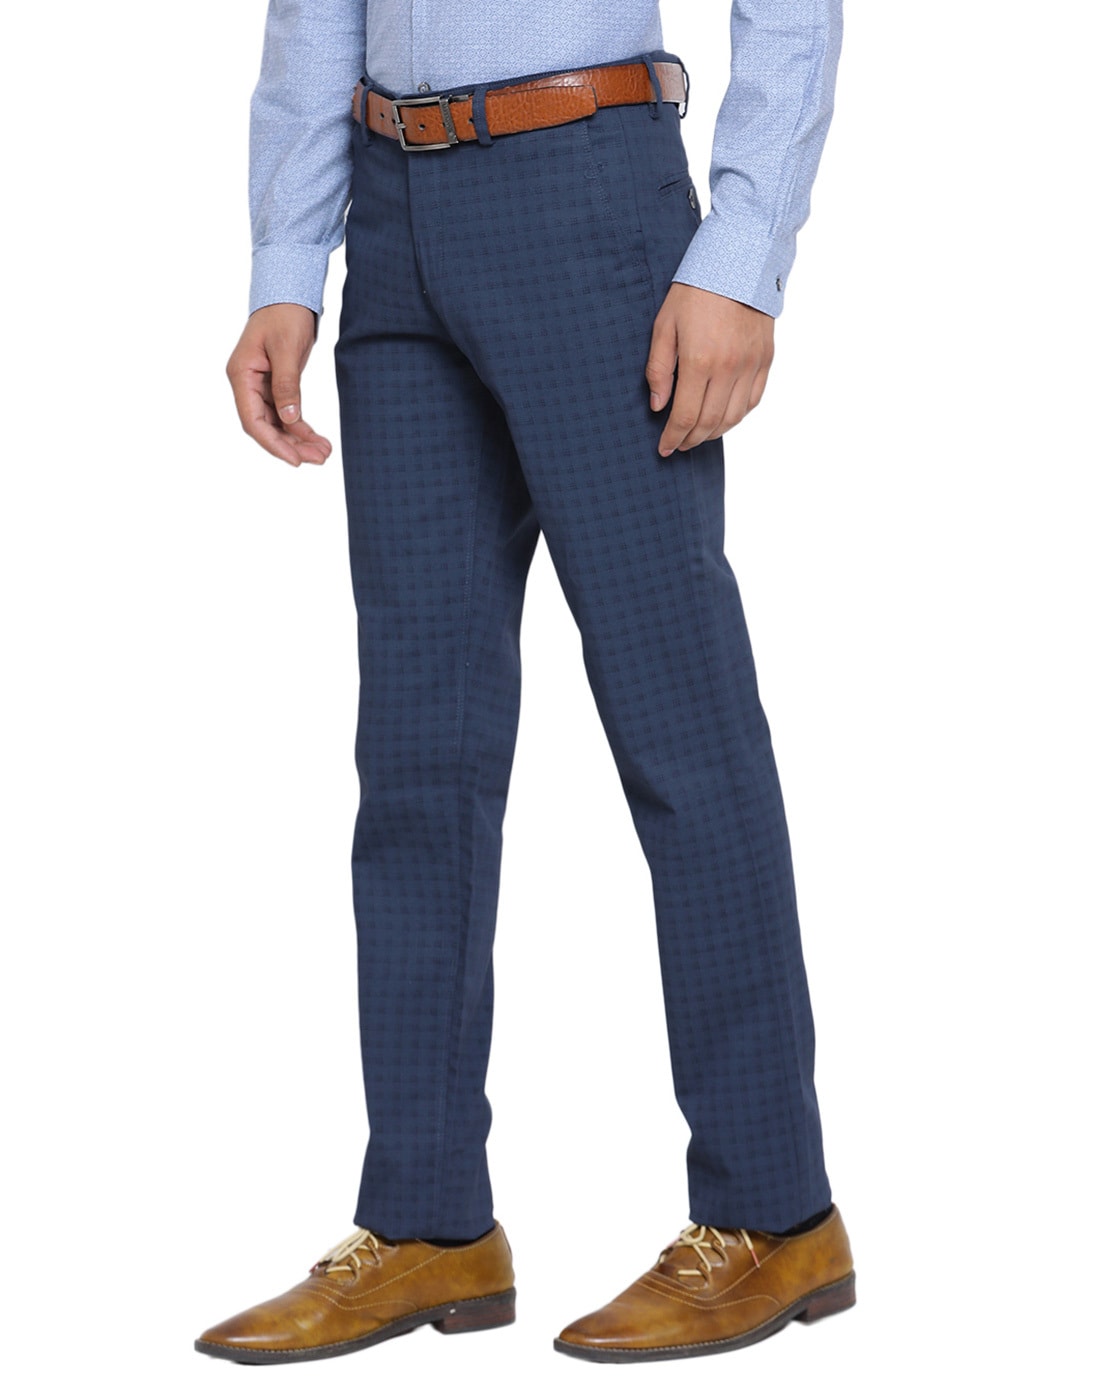 Buy Men Beige Solid Slim Fit Formal Trousers Online - 775682 | Peter England